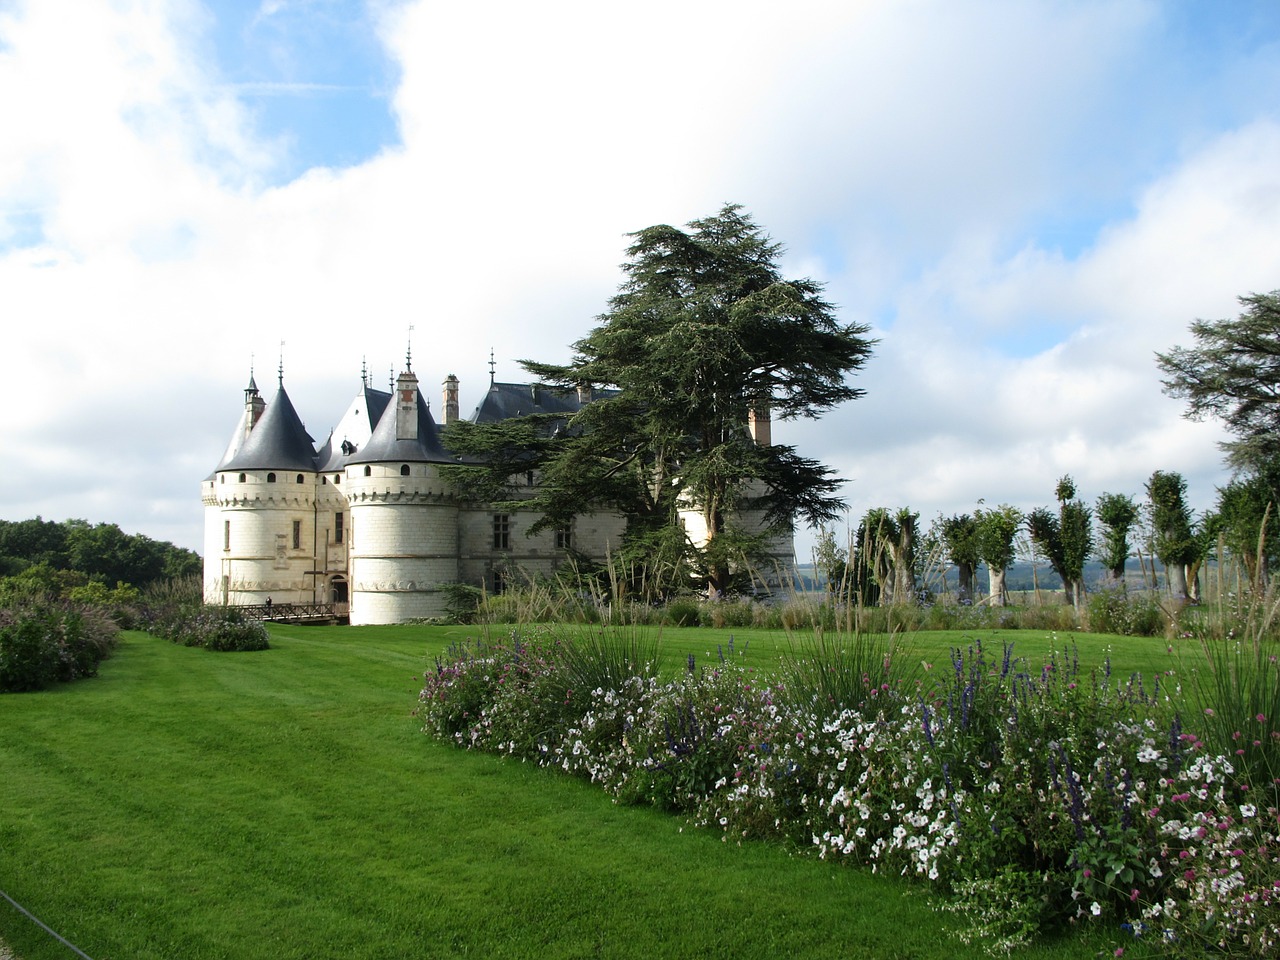 domaine de chaumont loire castle in france free photo